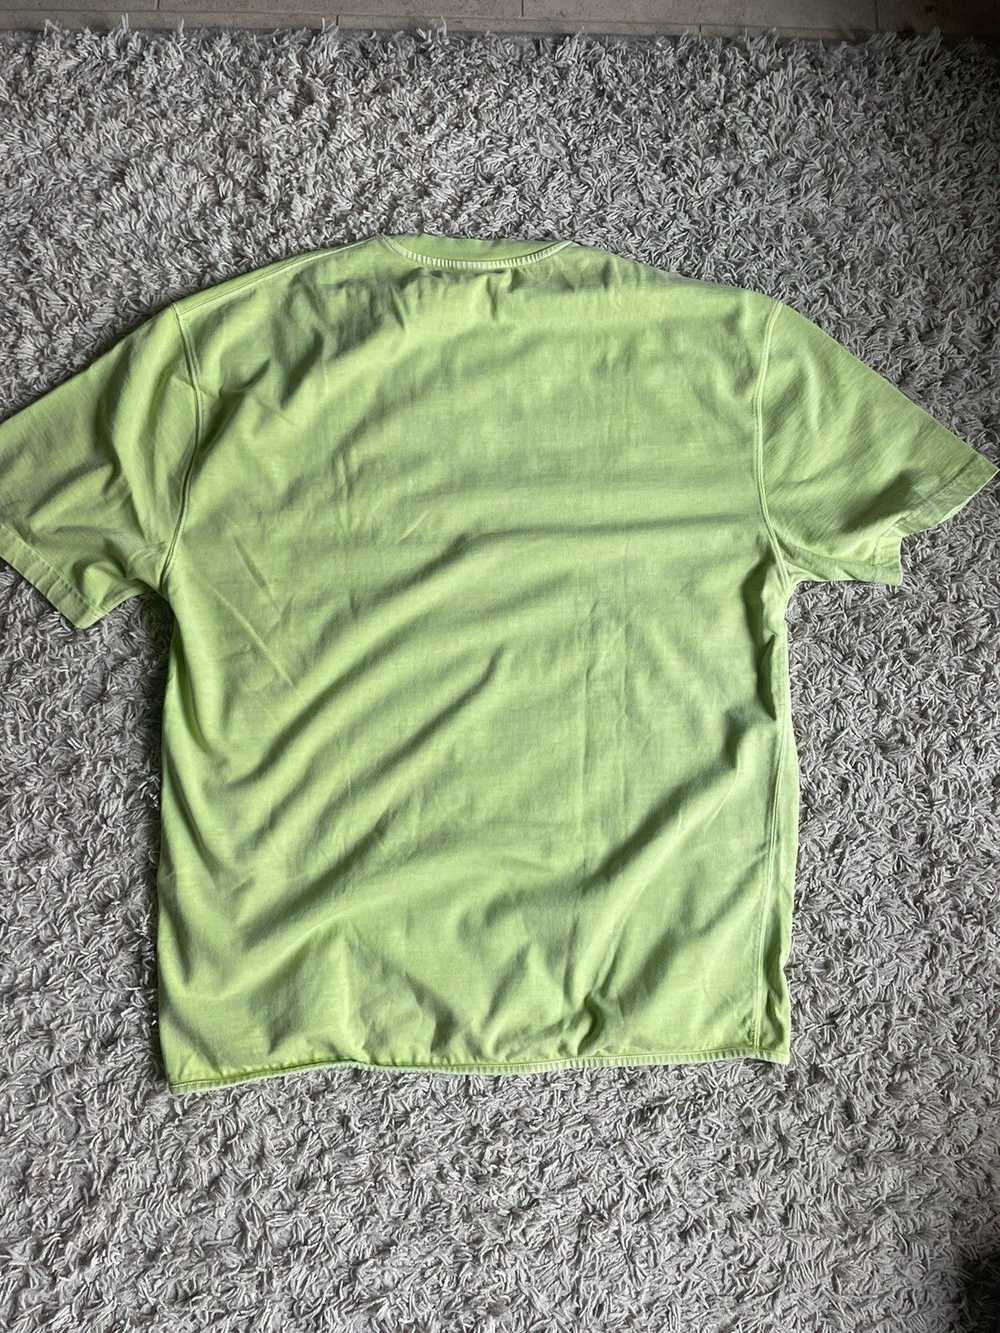 Yeezy Season Yeezy season 3 neon green tshirt - image 2